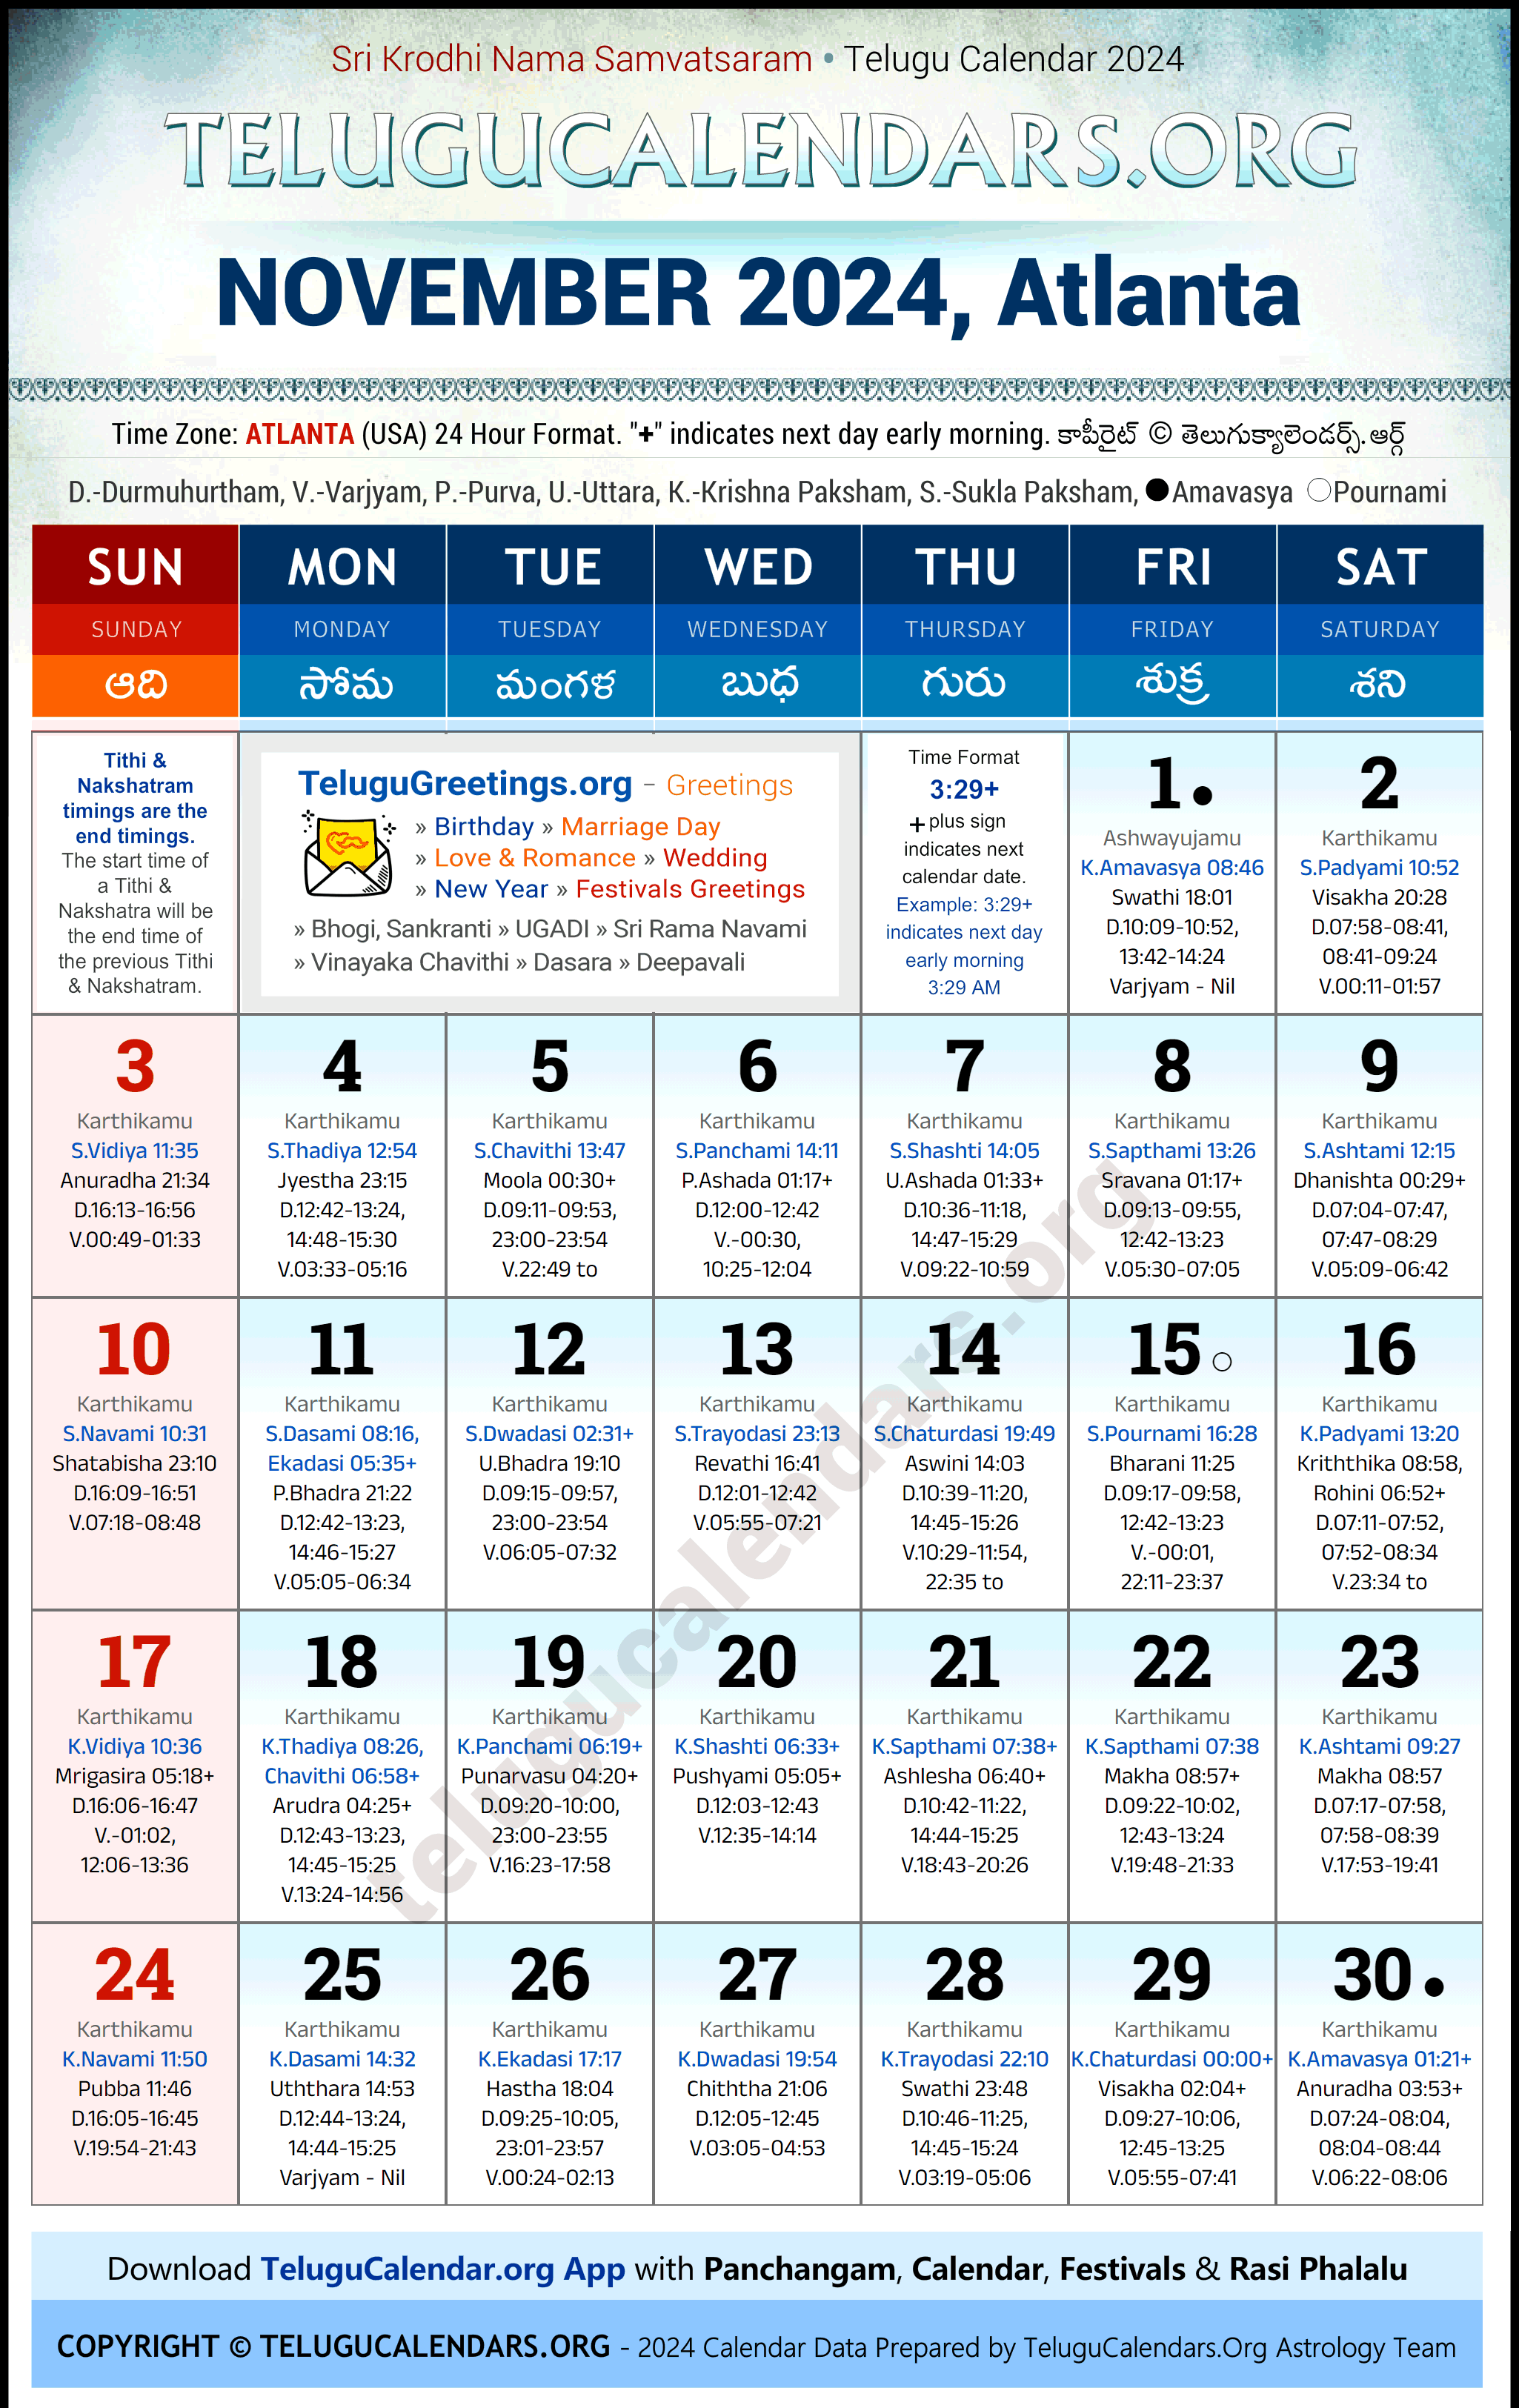 Telugu Calendar 2024 November Festivals for Atlanta